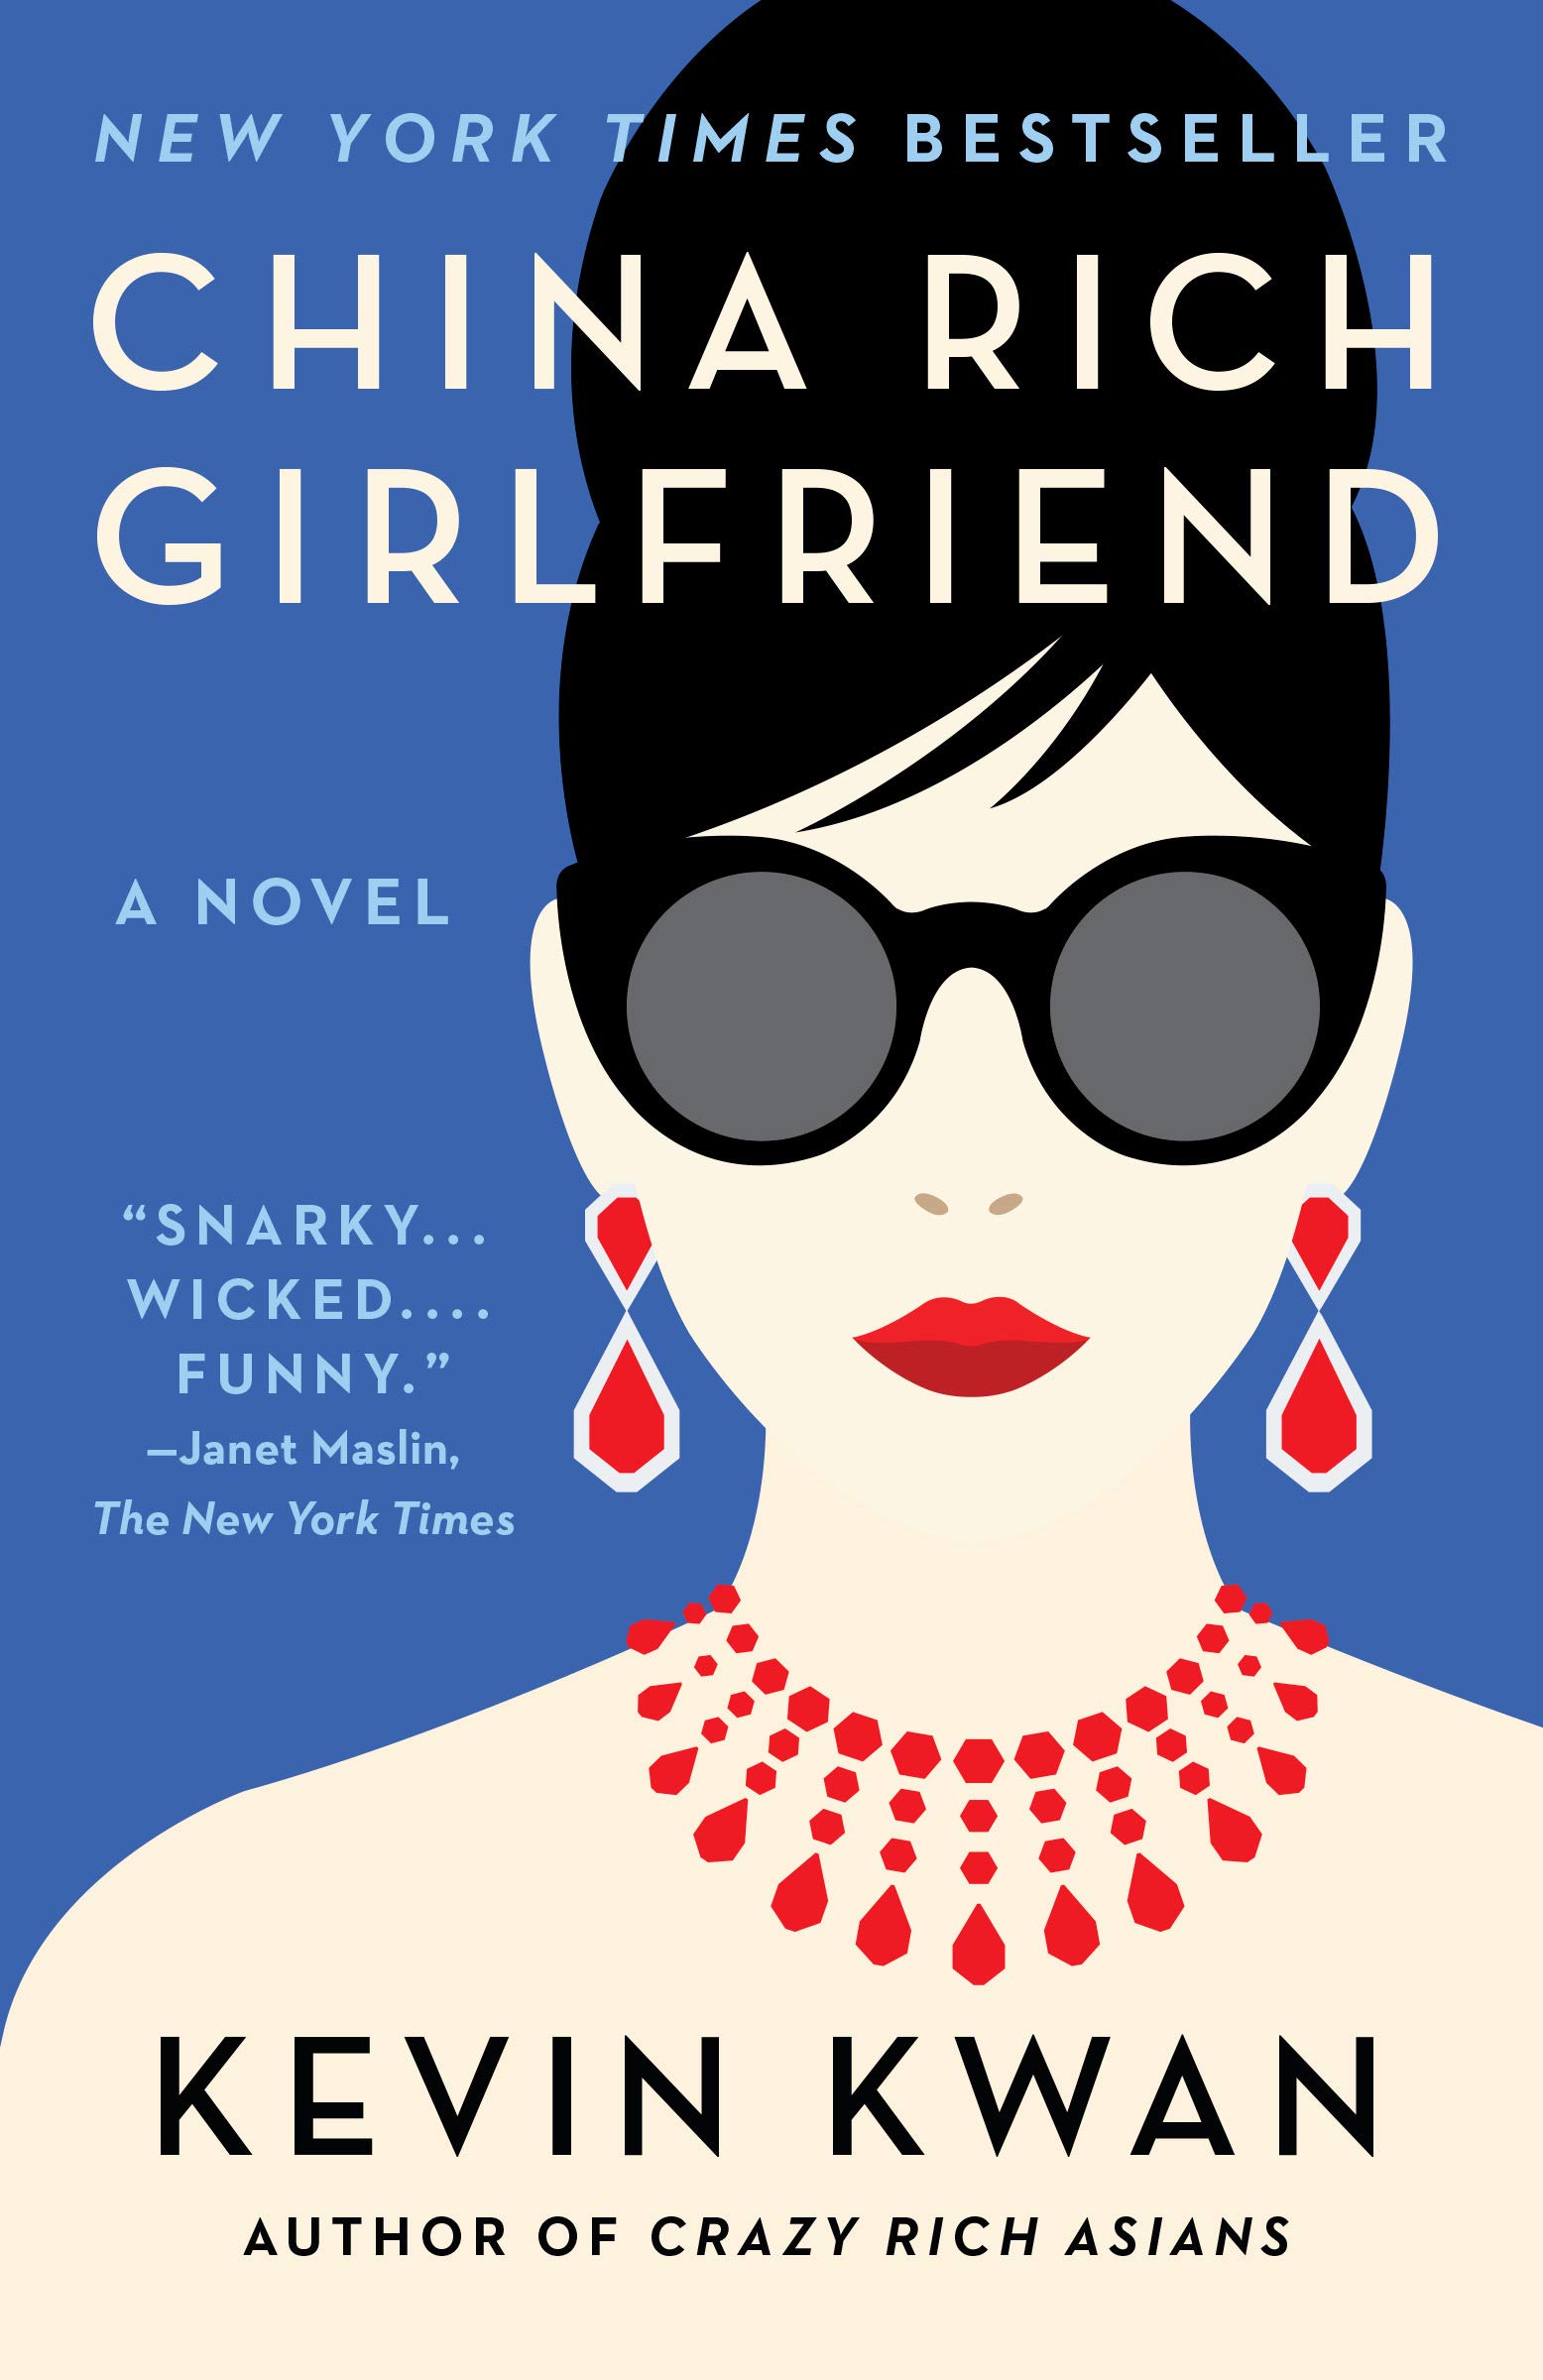 China Rich Girlfriend: A Novel (Crazy Rich Asians Trilogy Book 2)